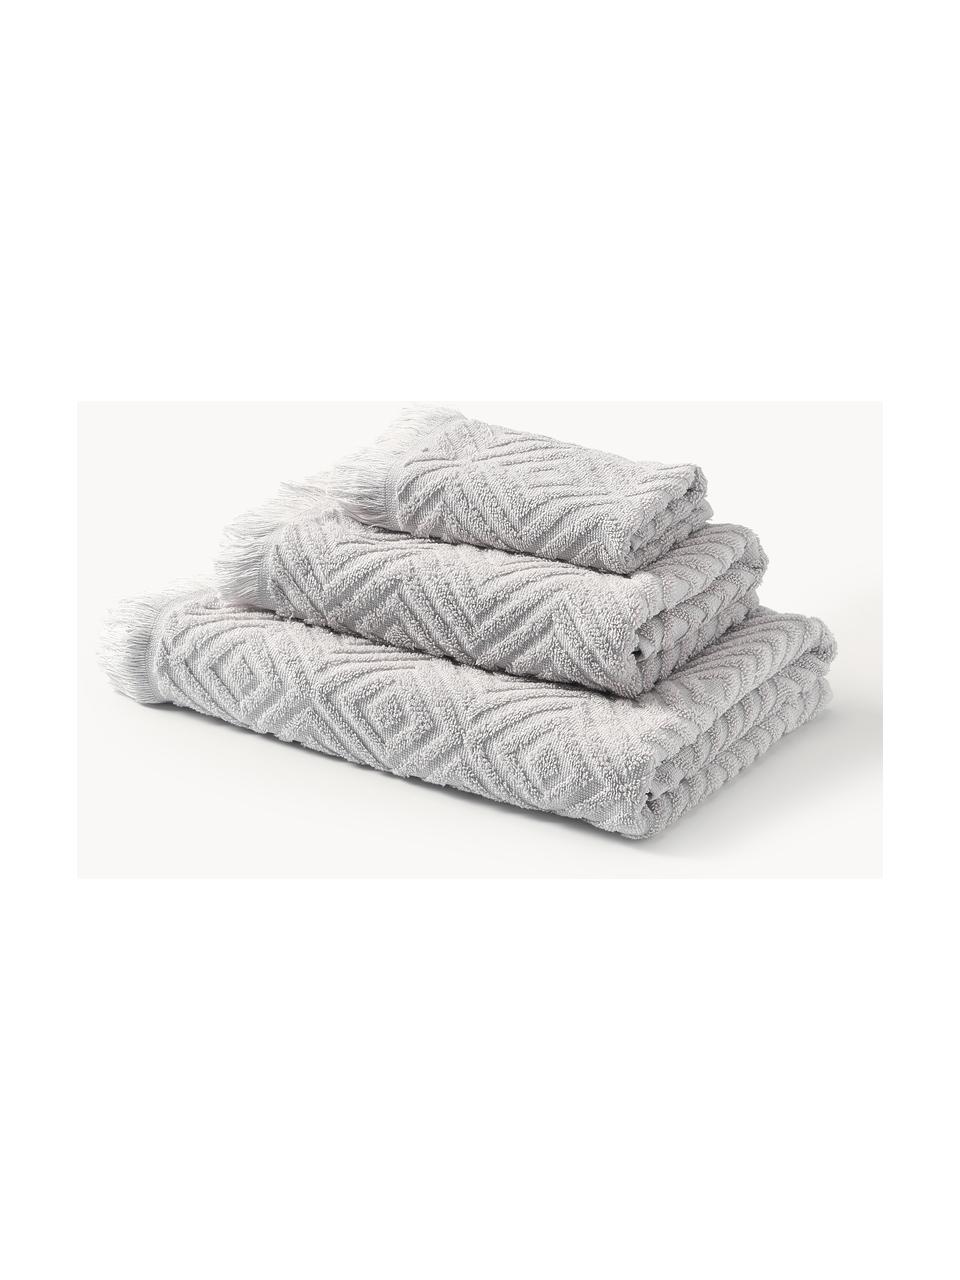 Set de toallas texturizadas Jacqui, tamaños diferentes, Gris claro, Set de 4 (toallas lavabo y toallas ducha)